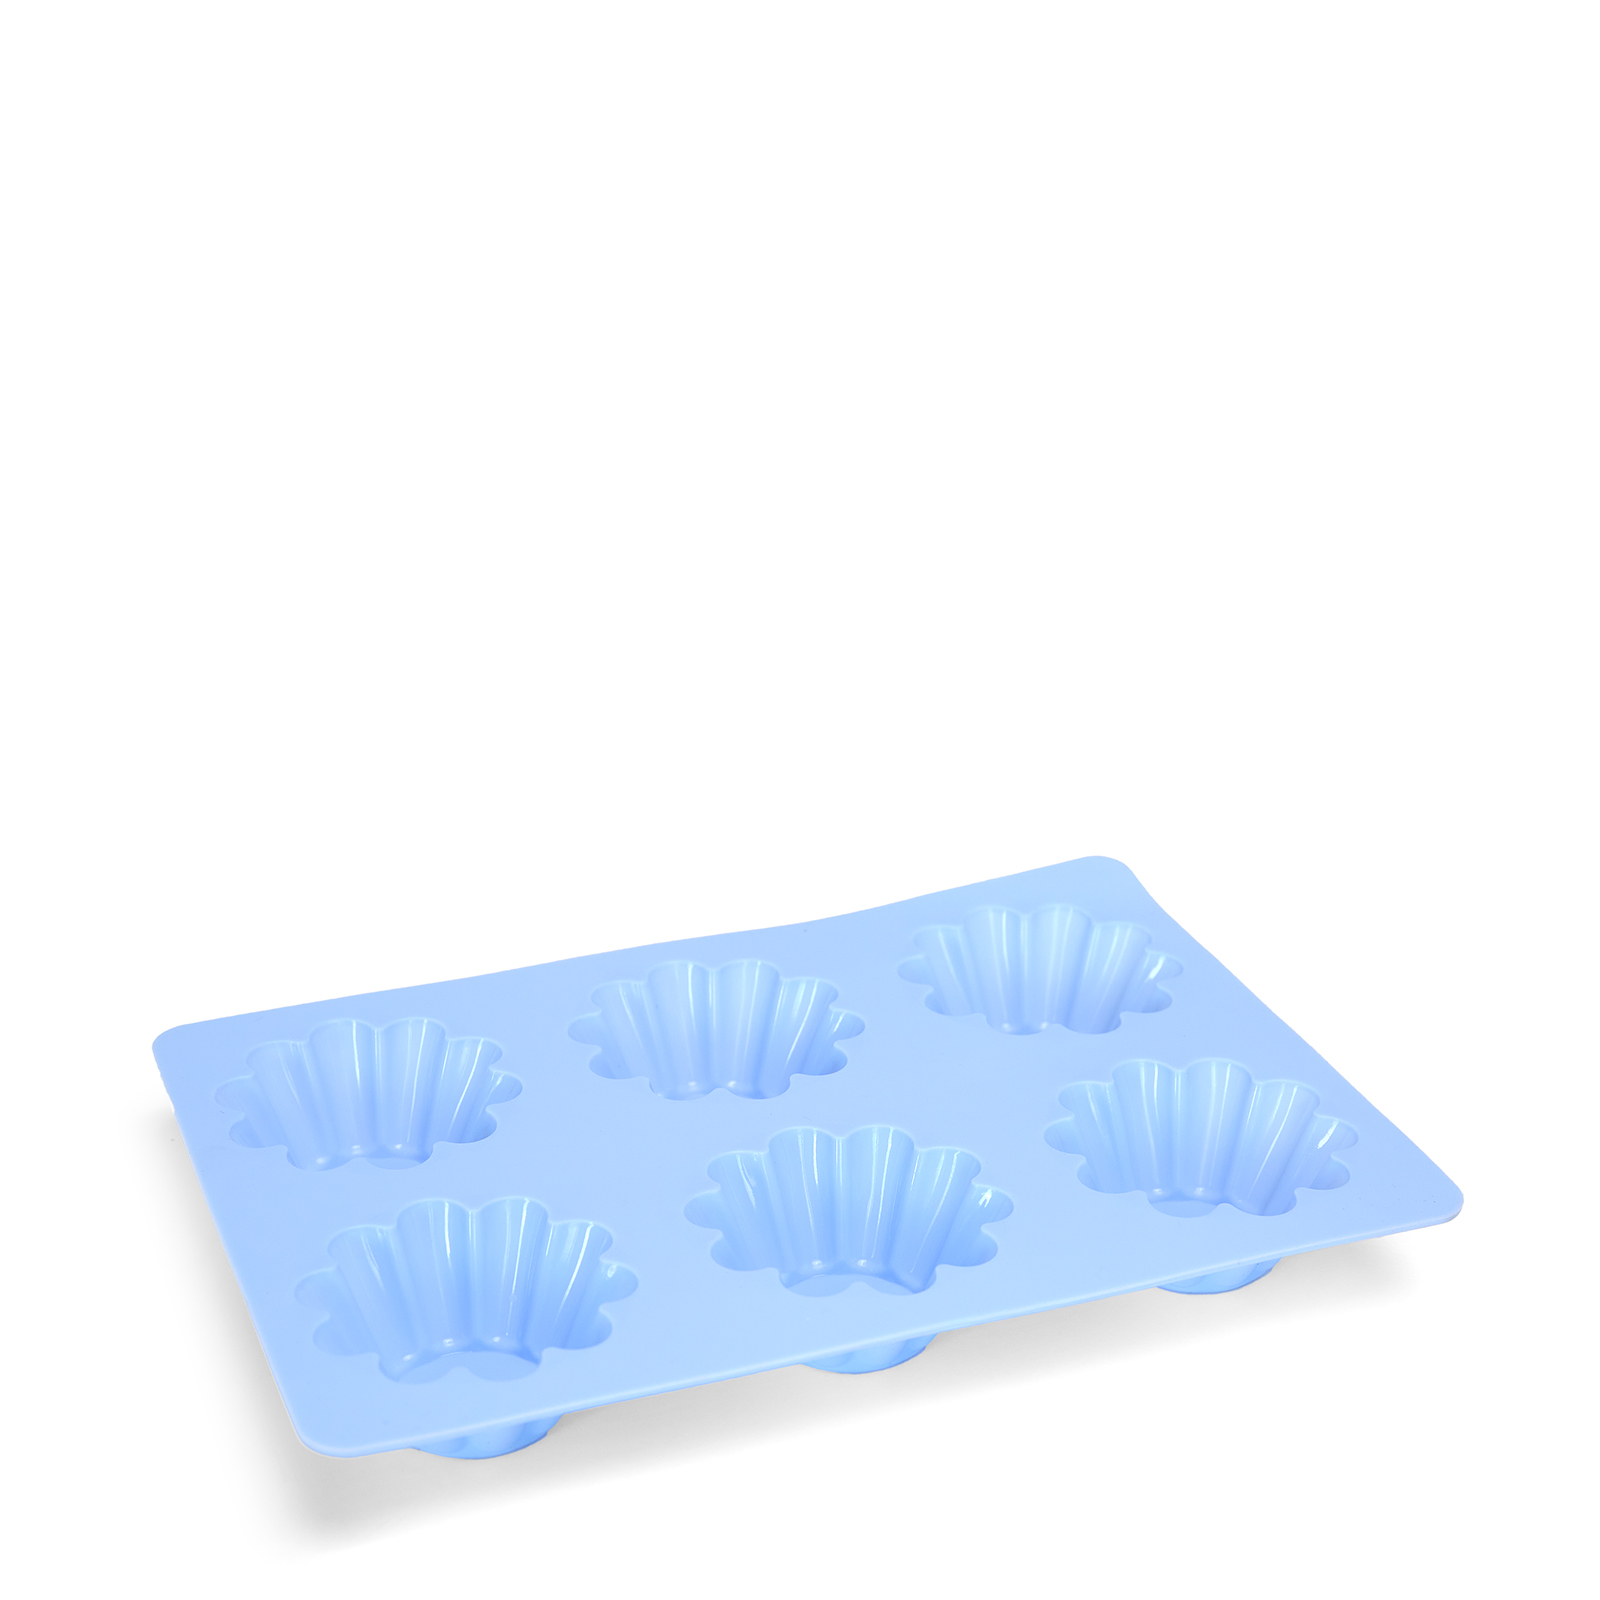 Форма для выпечки Flower meadow, голубая форма для выпечки голубая со снежинками 5 х 3 см